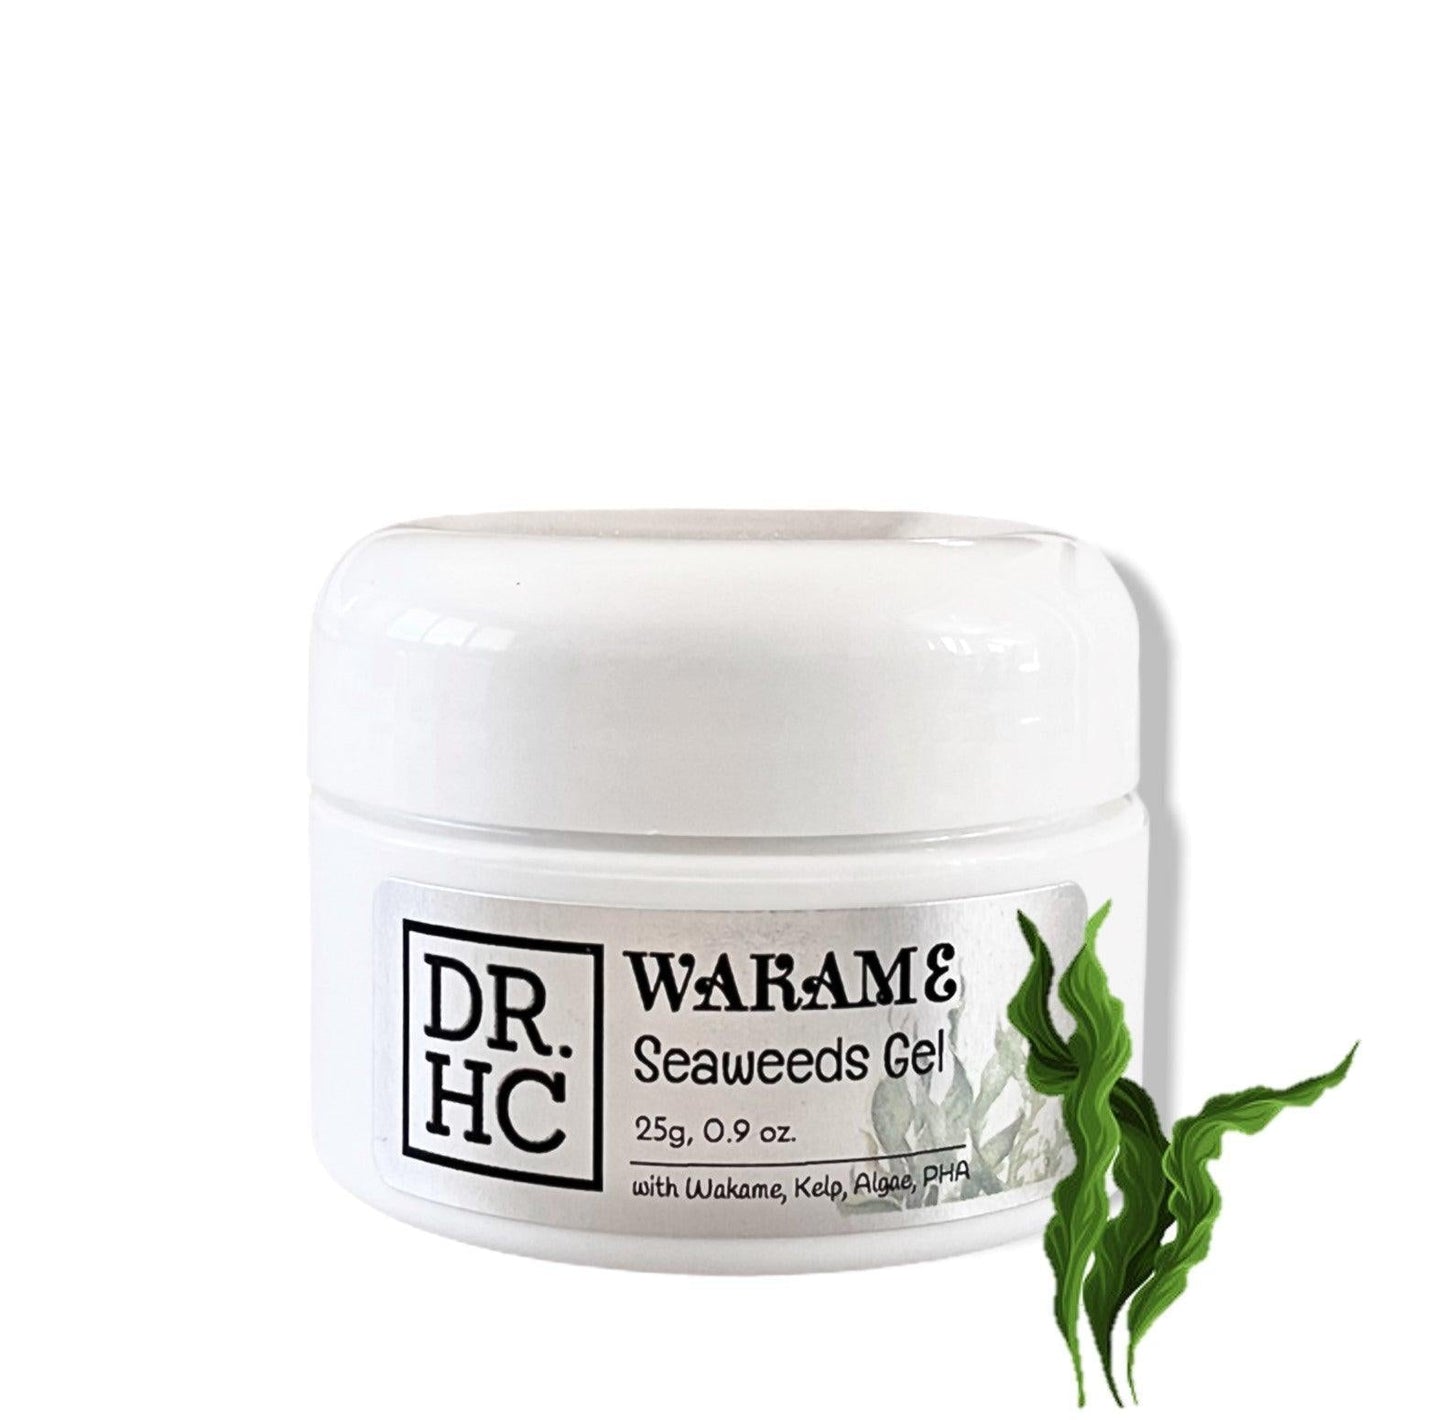 DR.HC Wakame Seaweeds Gel (25g, 0.9oz) (Soothing, Anti-acne, Skin Firming, Hydrating, Skin toning...)